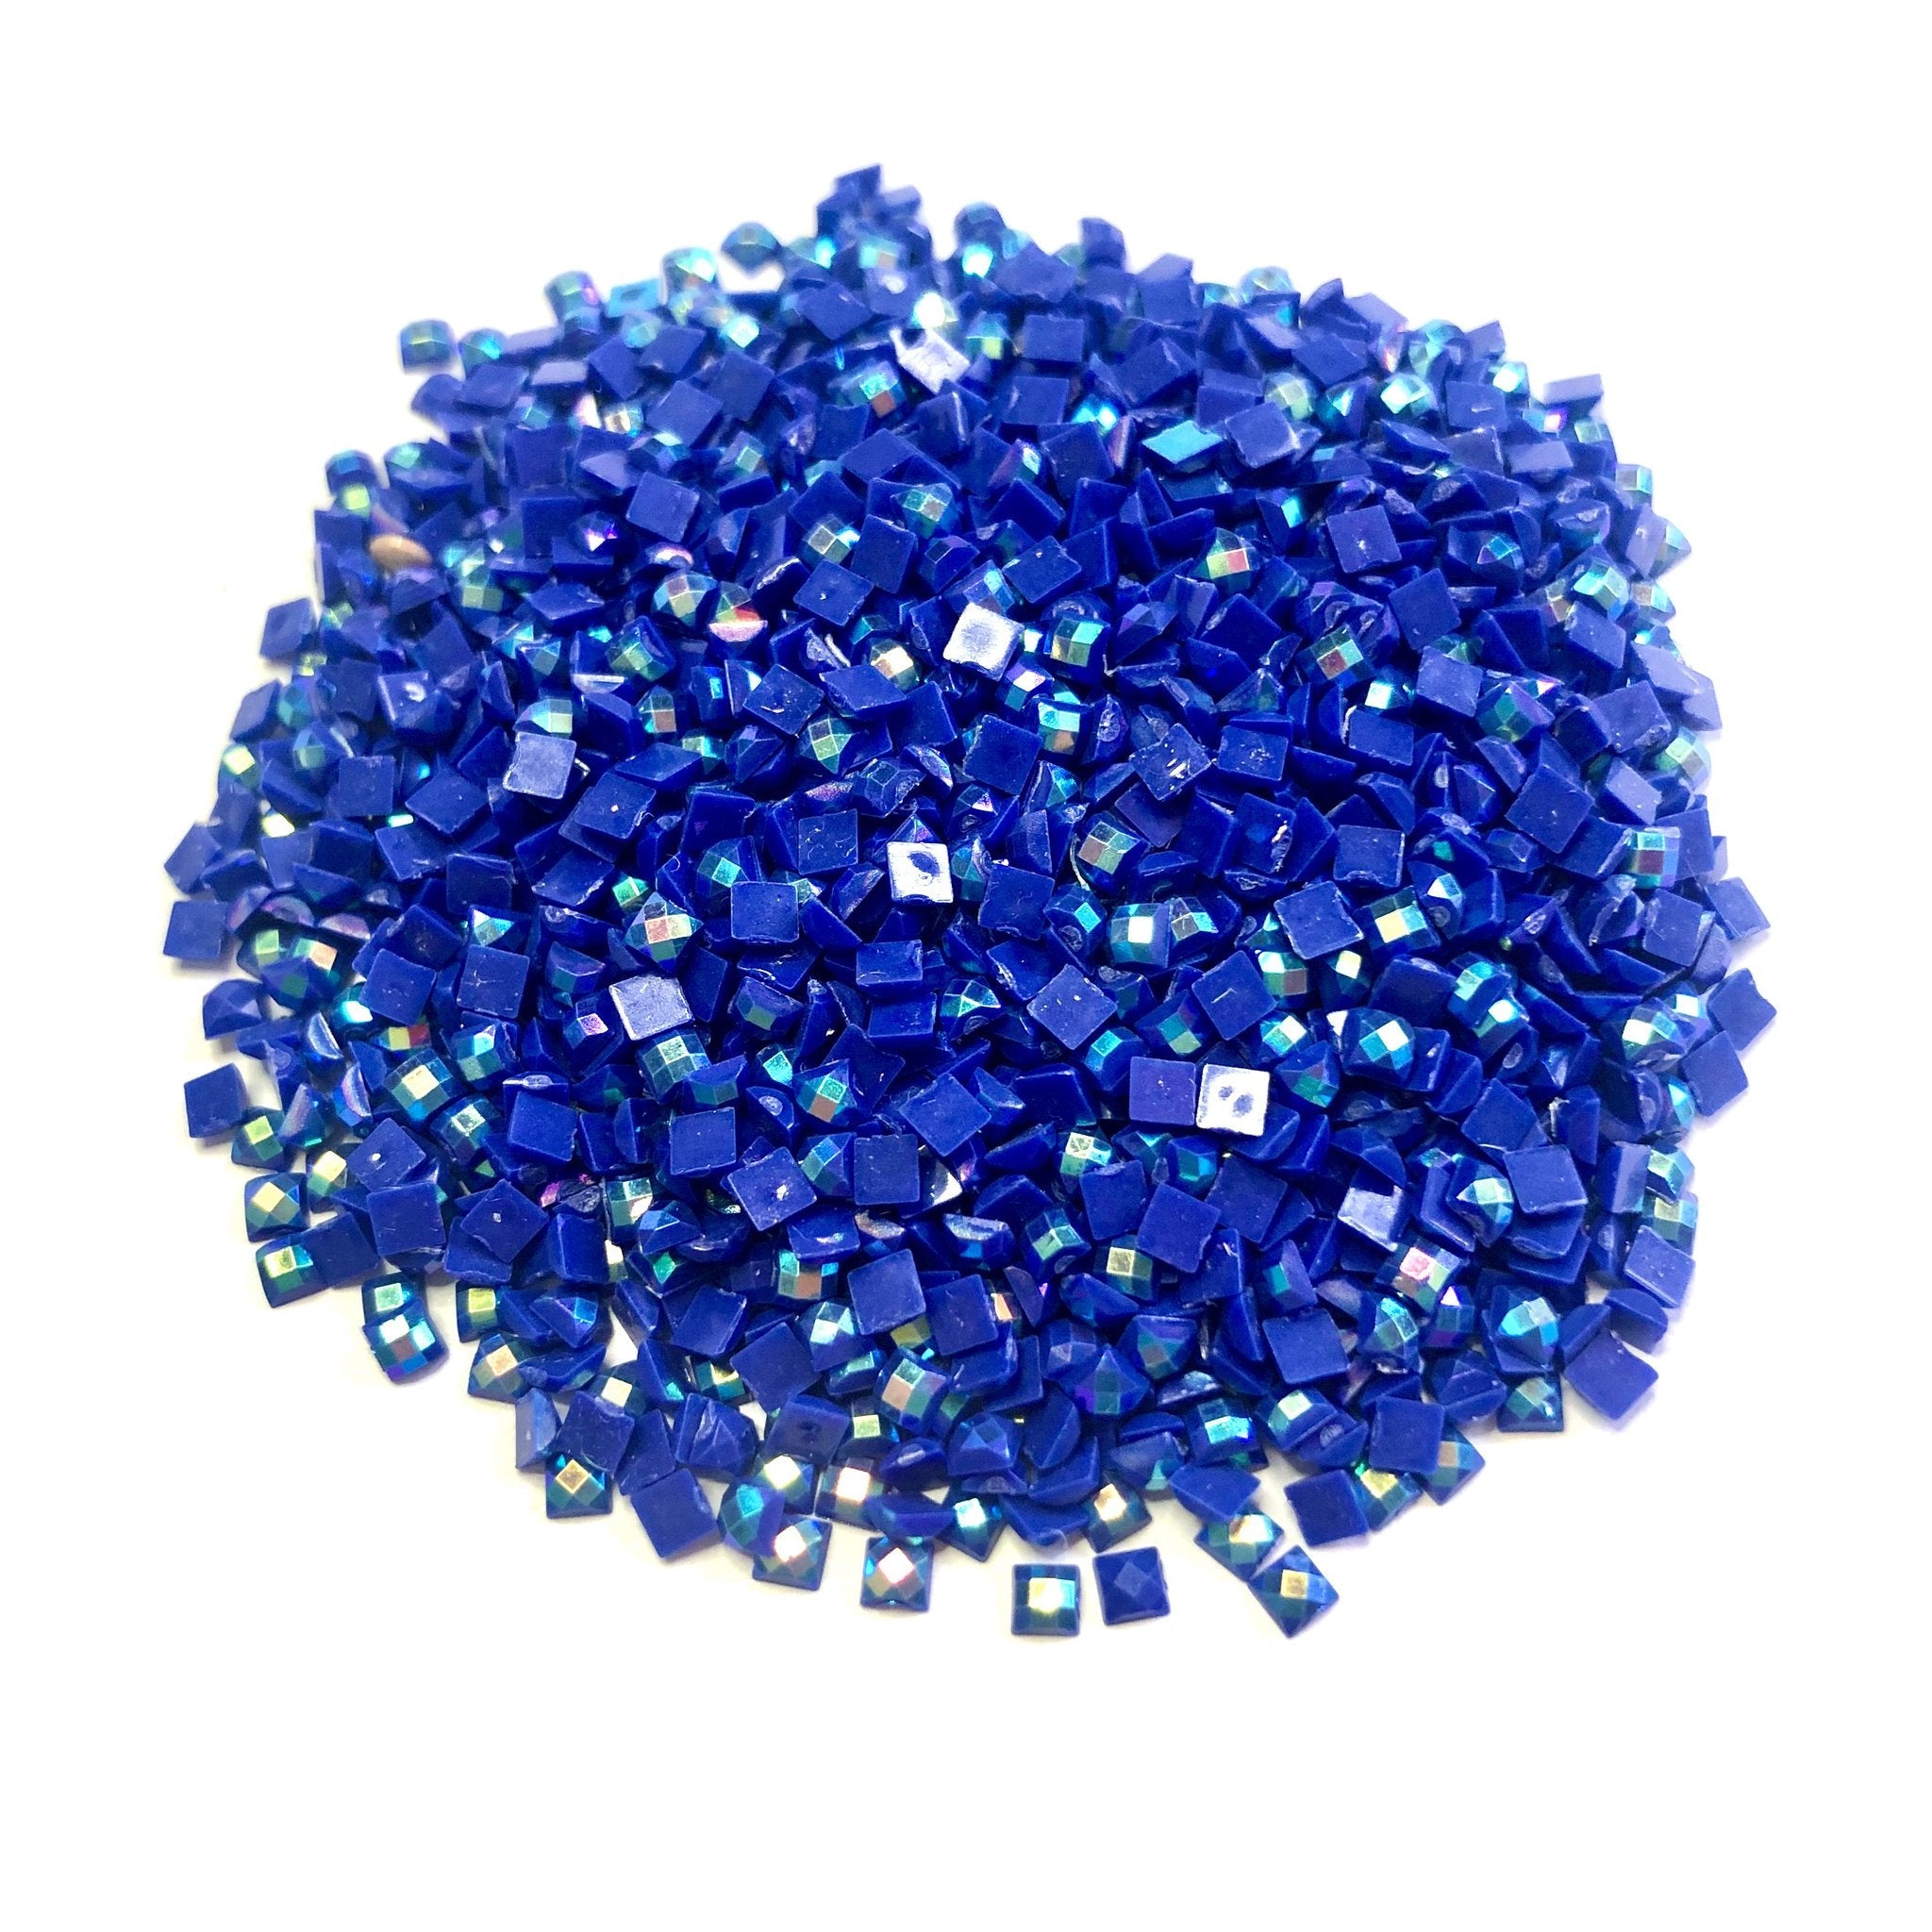 Una pintura de diamantes llamado 'Set de 10 bolsas de perlas para la pintura de diamantes' - Meencantalapinturadediamantes